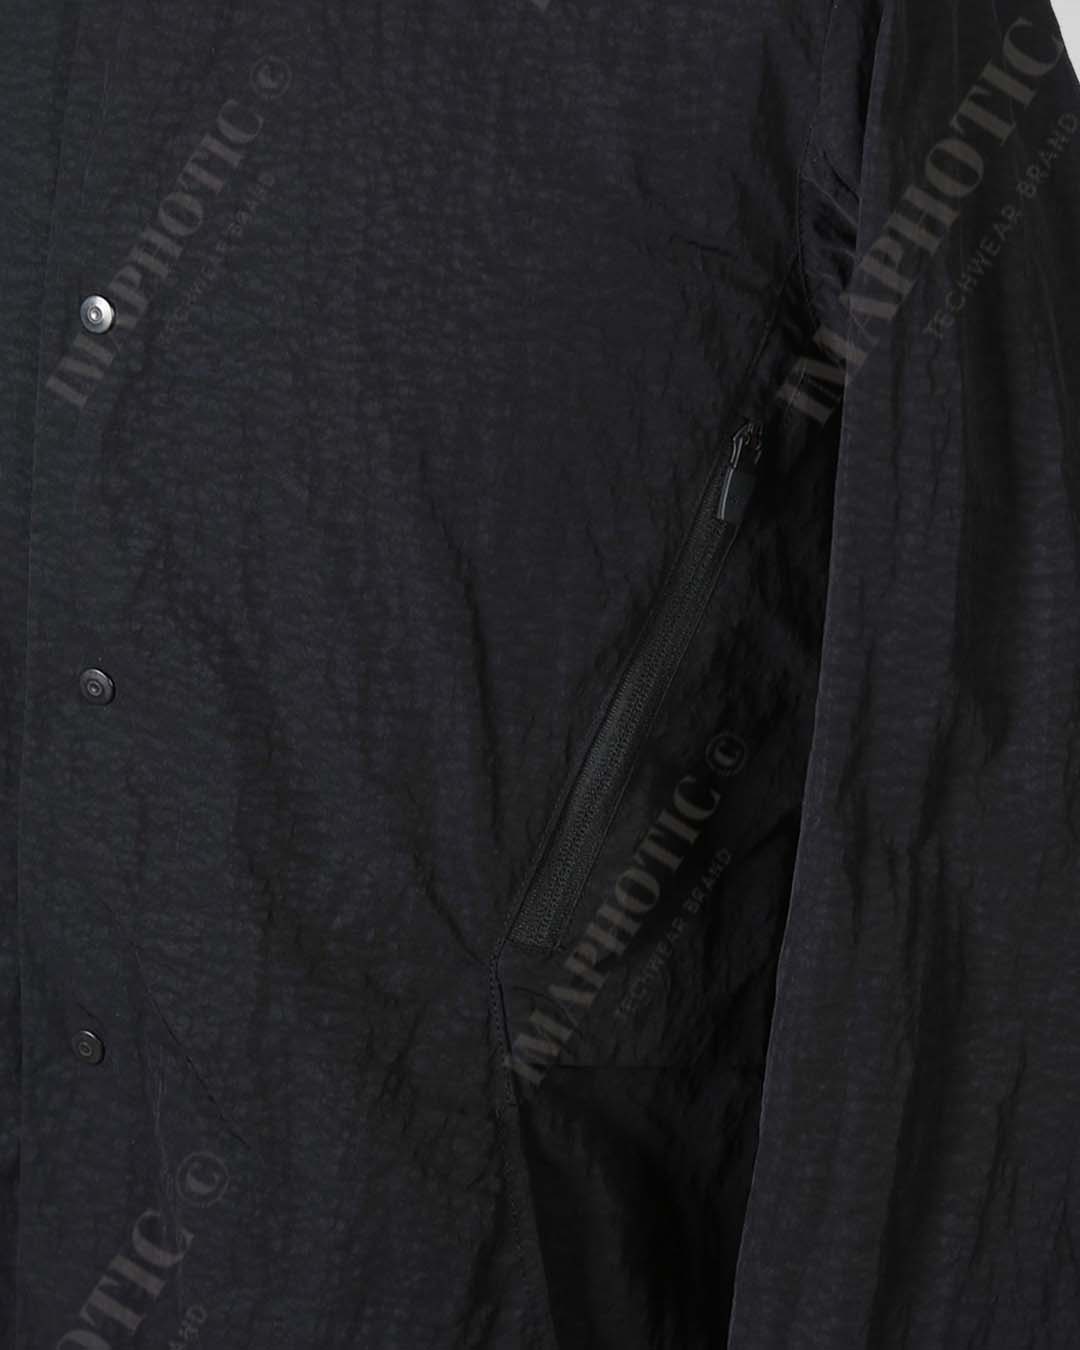 Stylish Black Shirt Jacket